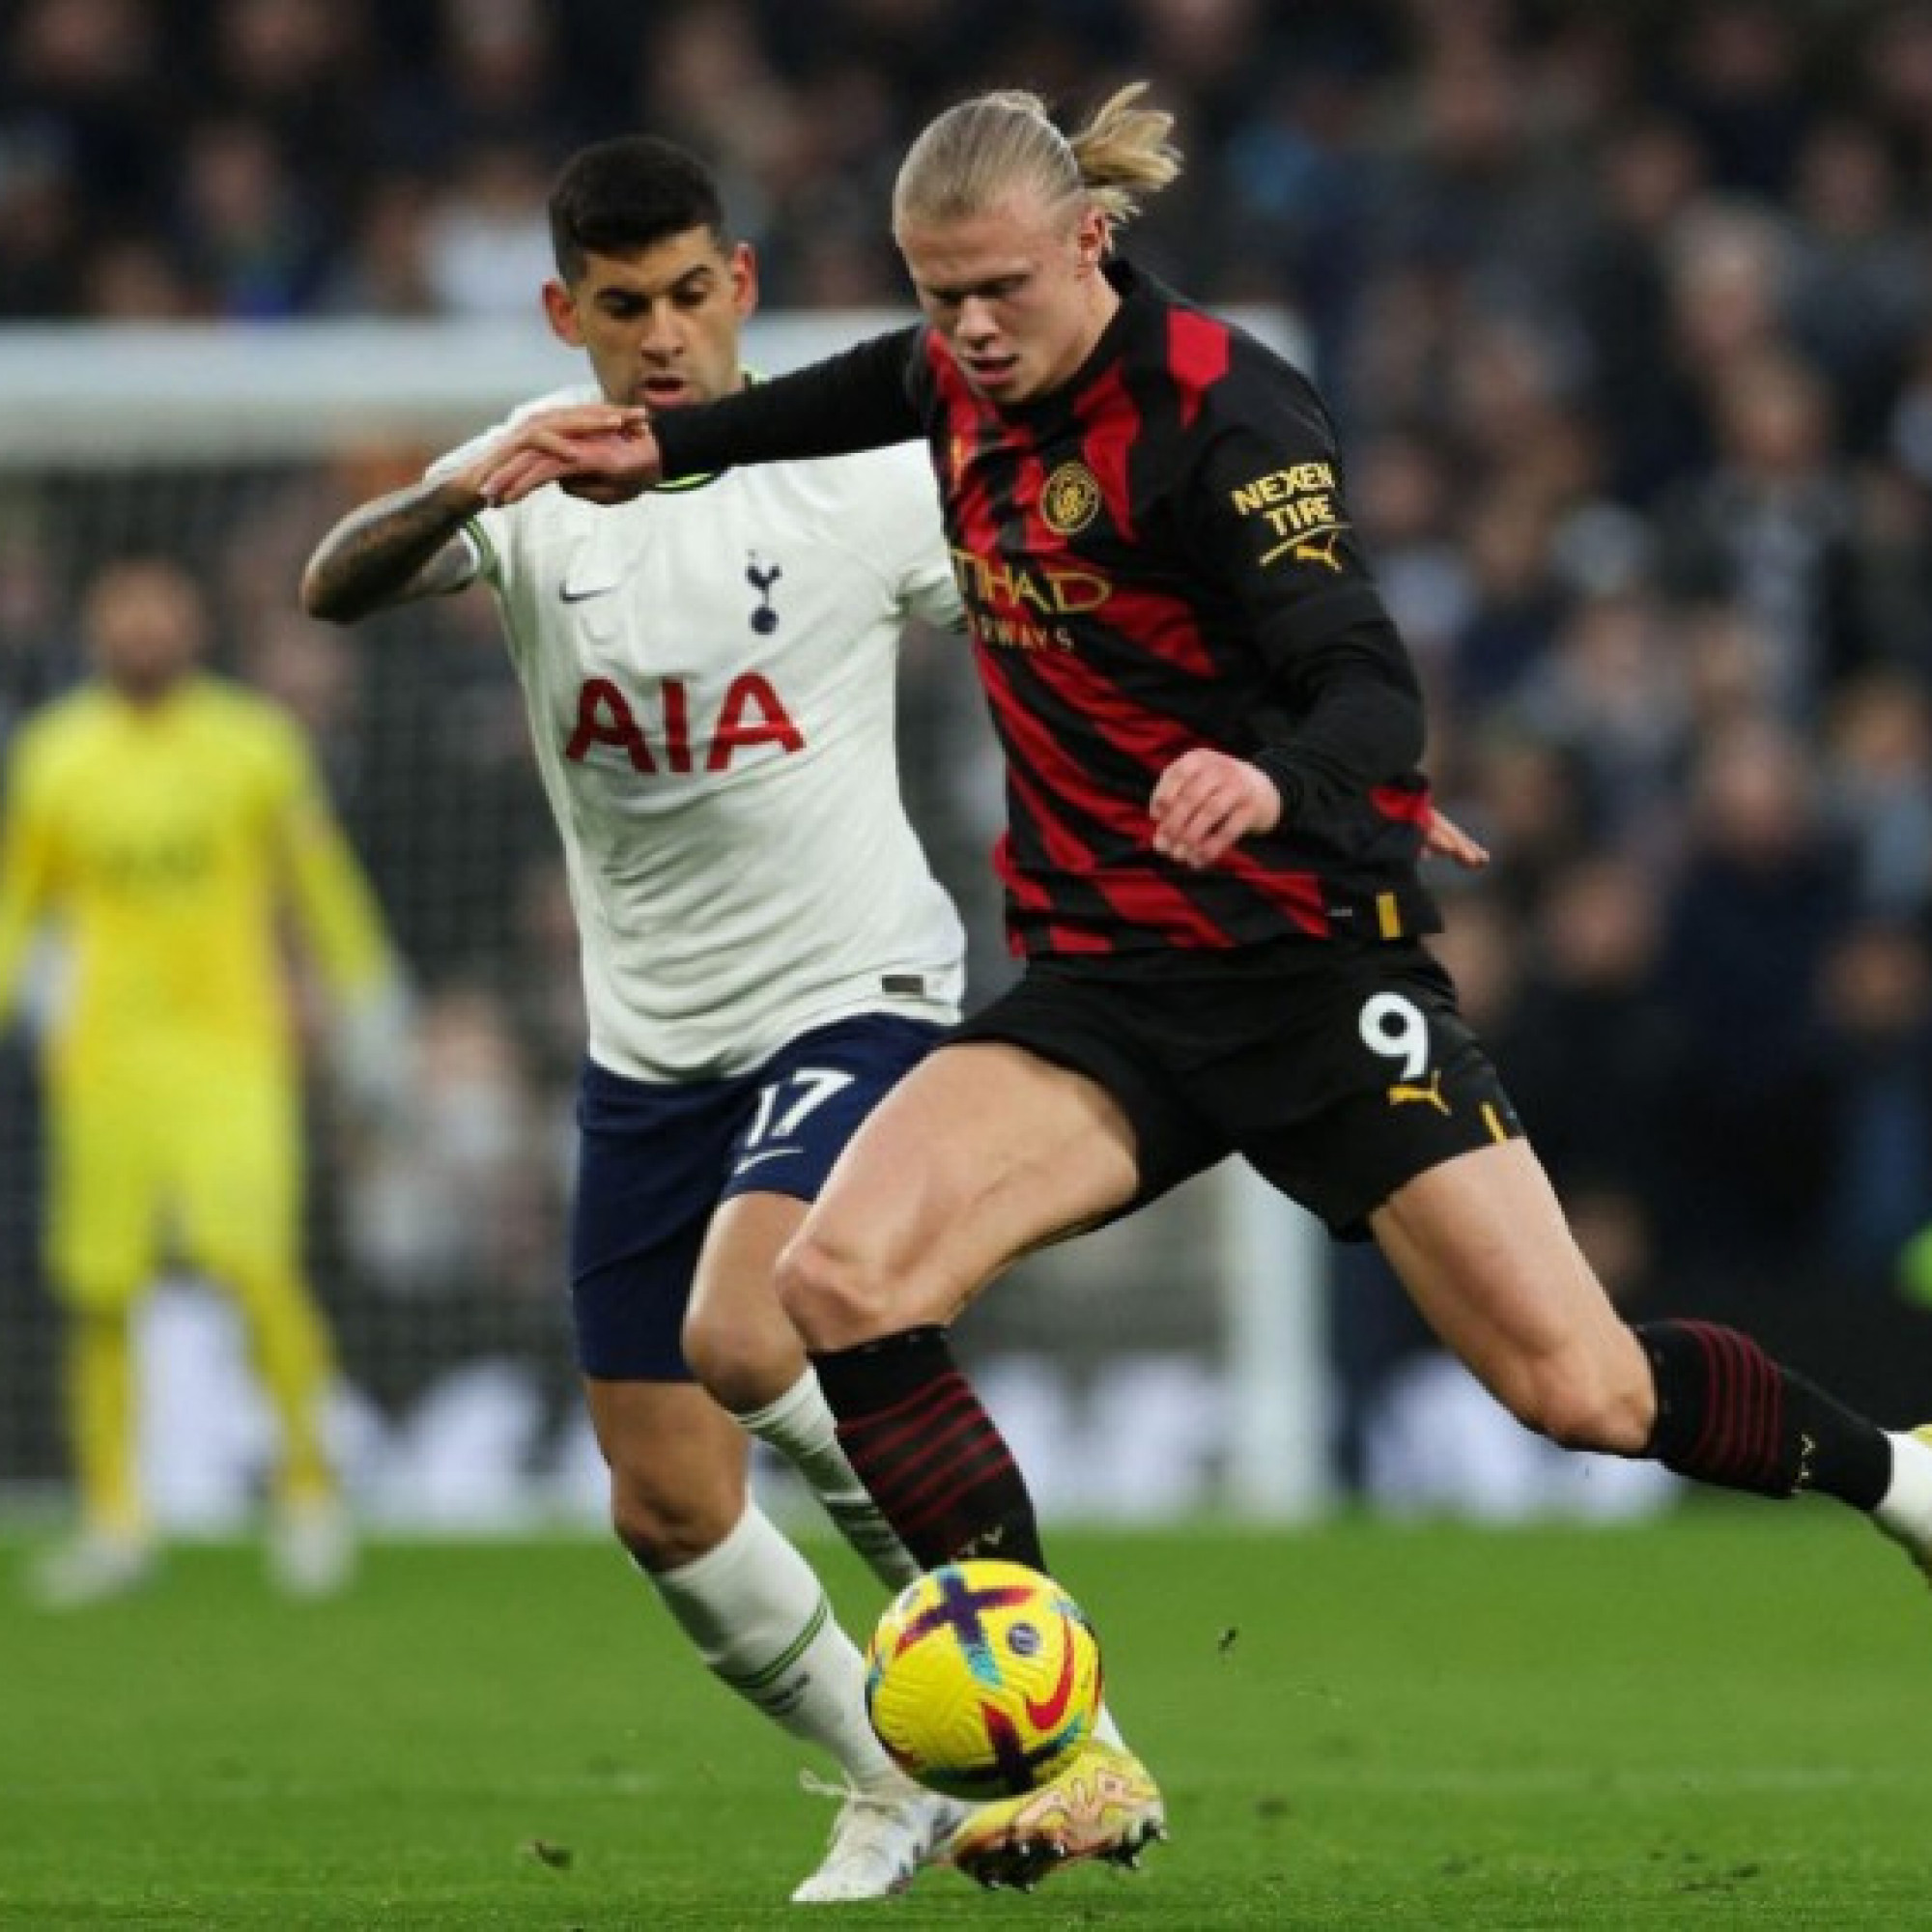  - Tường thuật bóng đá Tottenham - Man City: Romero nhận thẻ đỏ, chủ nhà chơi thiếu người (Ngoại hạng Anh)